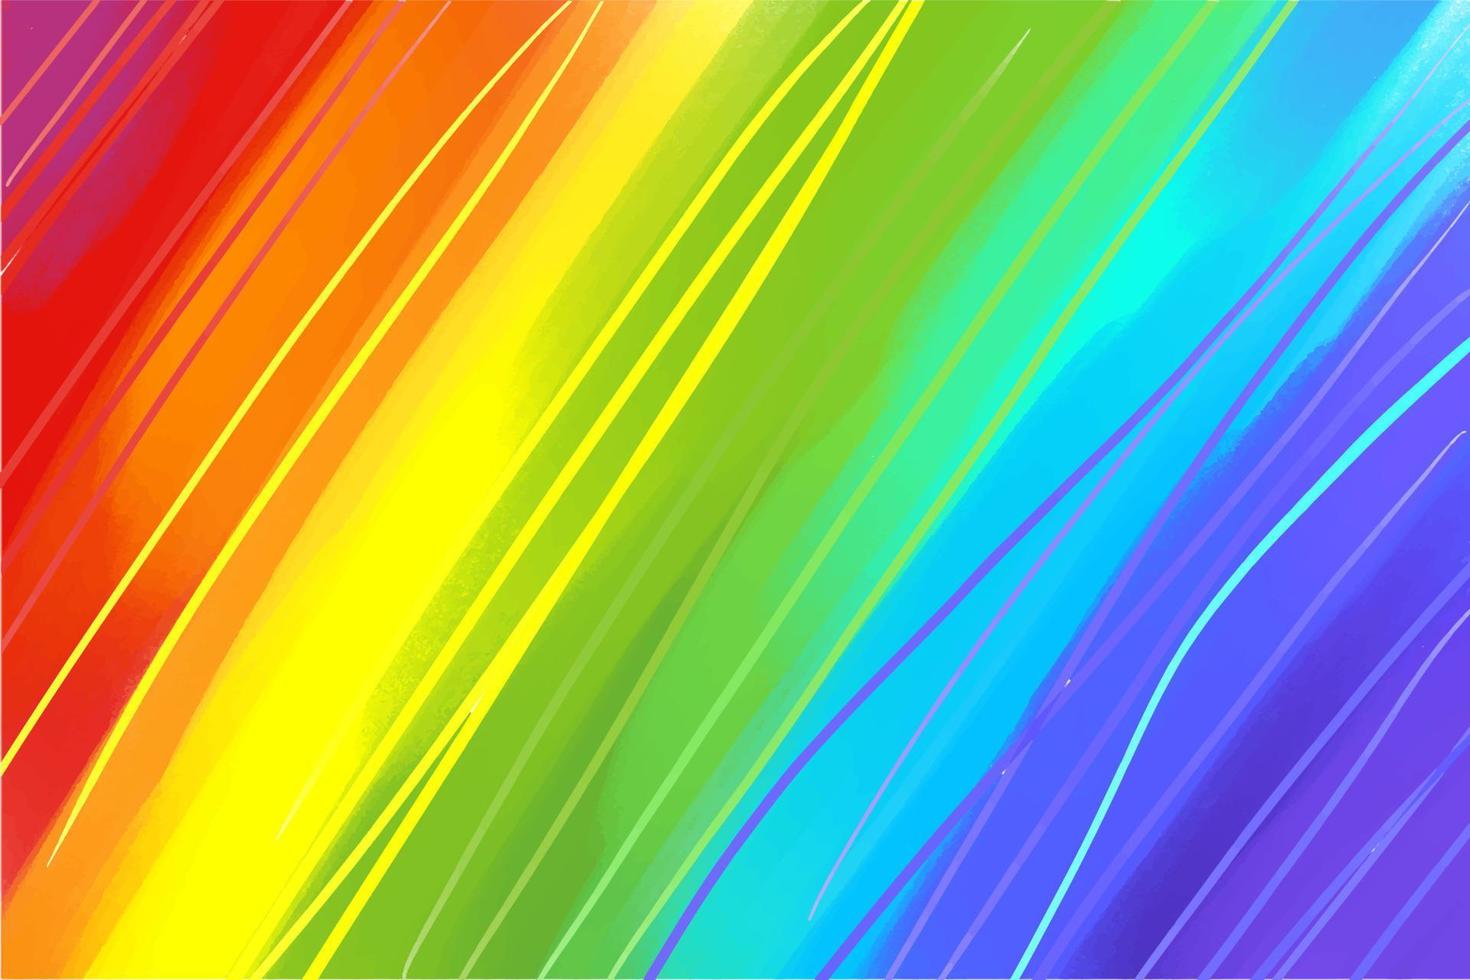 Acrylhintergrund, in den Farben des Regenbogens, mehrfarbig, mit ausgeprägten Farbstrichen, Streifen und Farblinien, Kunst, Hintergrund für ein Banner vektor